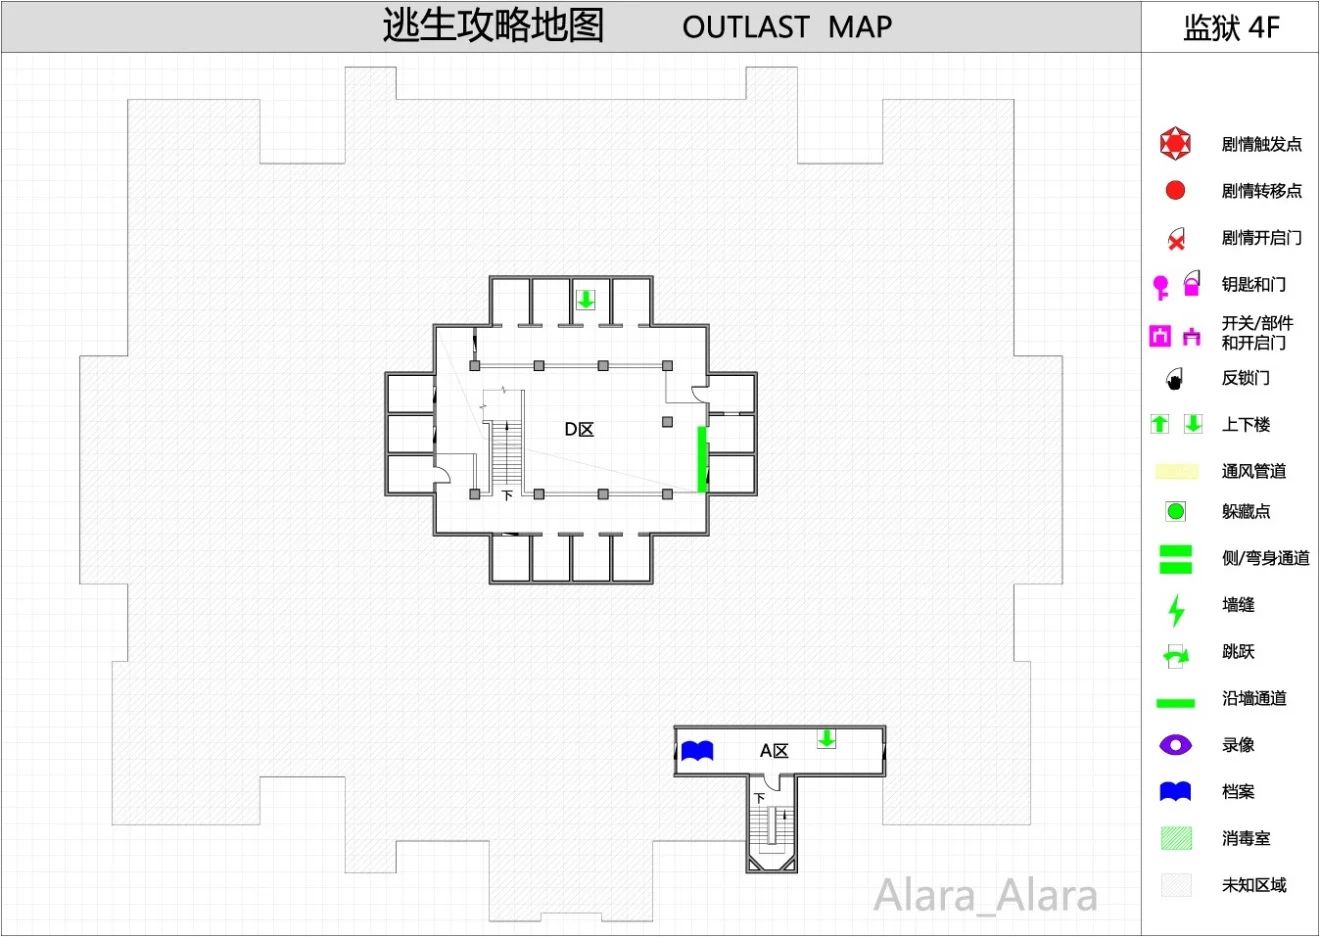 《逃生（outlast）》游戏完整地图